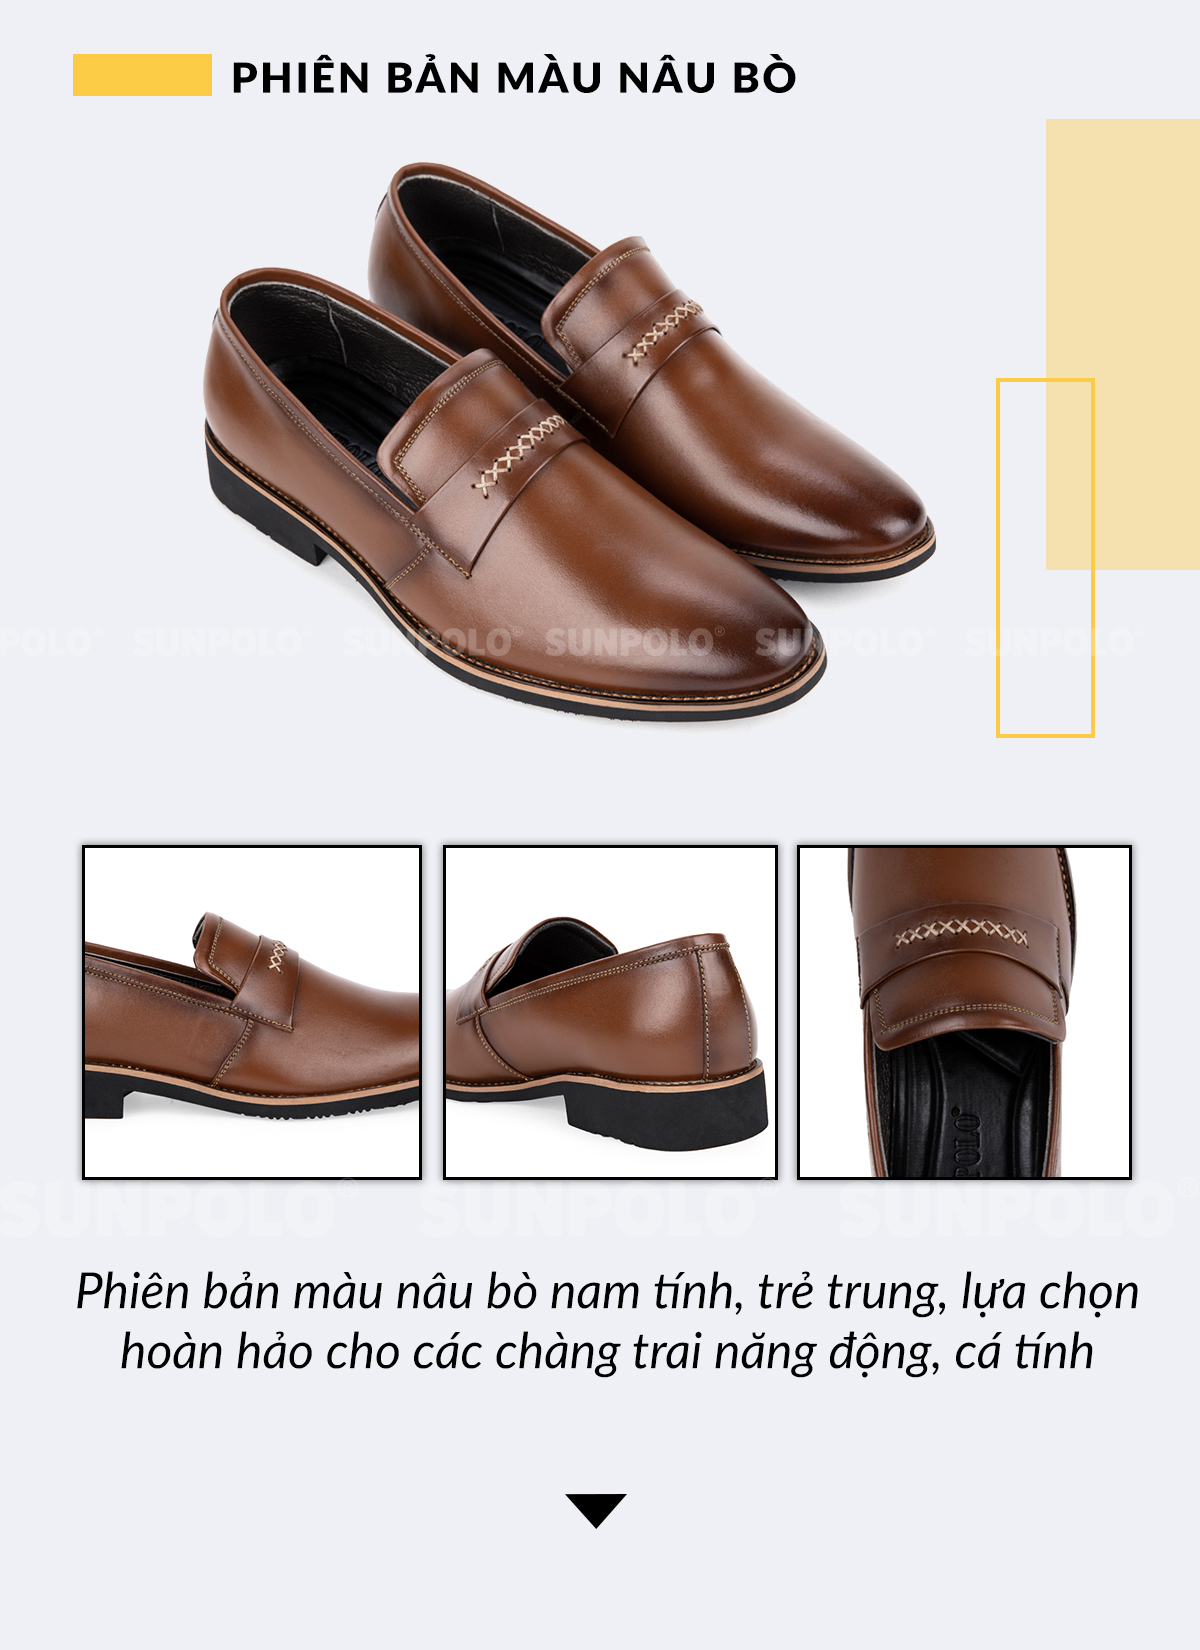 Giày Tây Da Bò SUNPOLO SPH295 - Phiên bản màu nâu bò